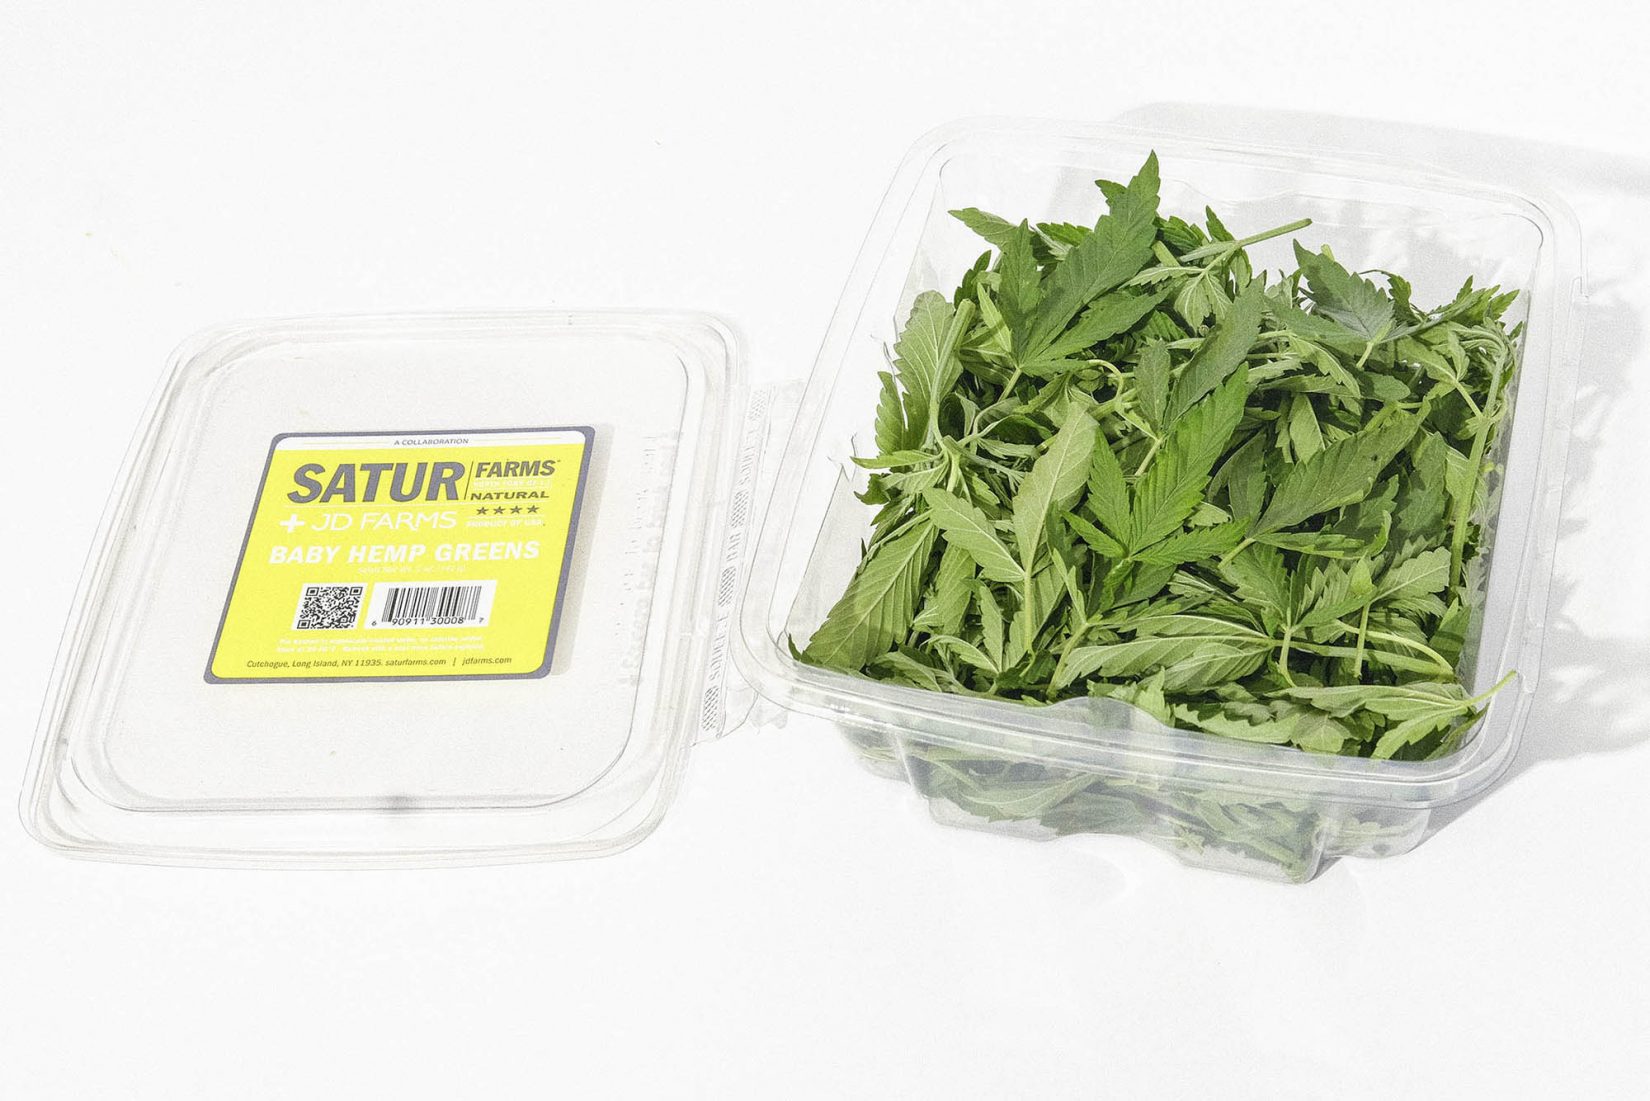 Hemp foods: Salad greens made of hemp leaves